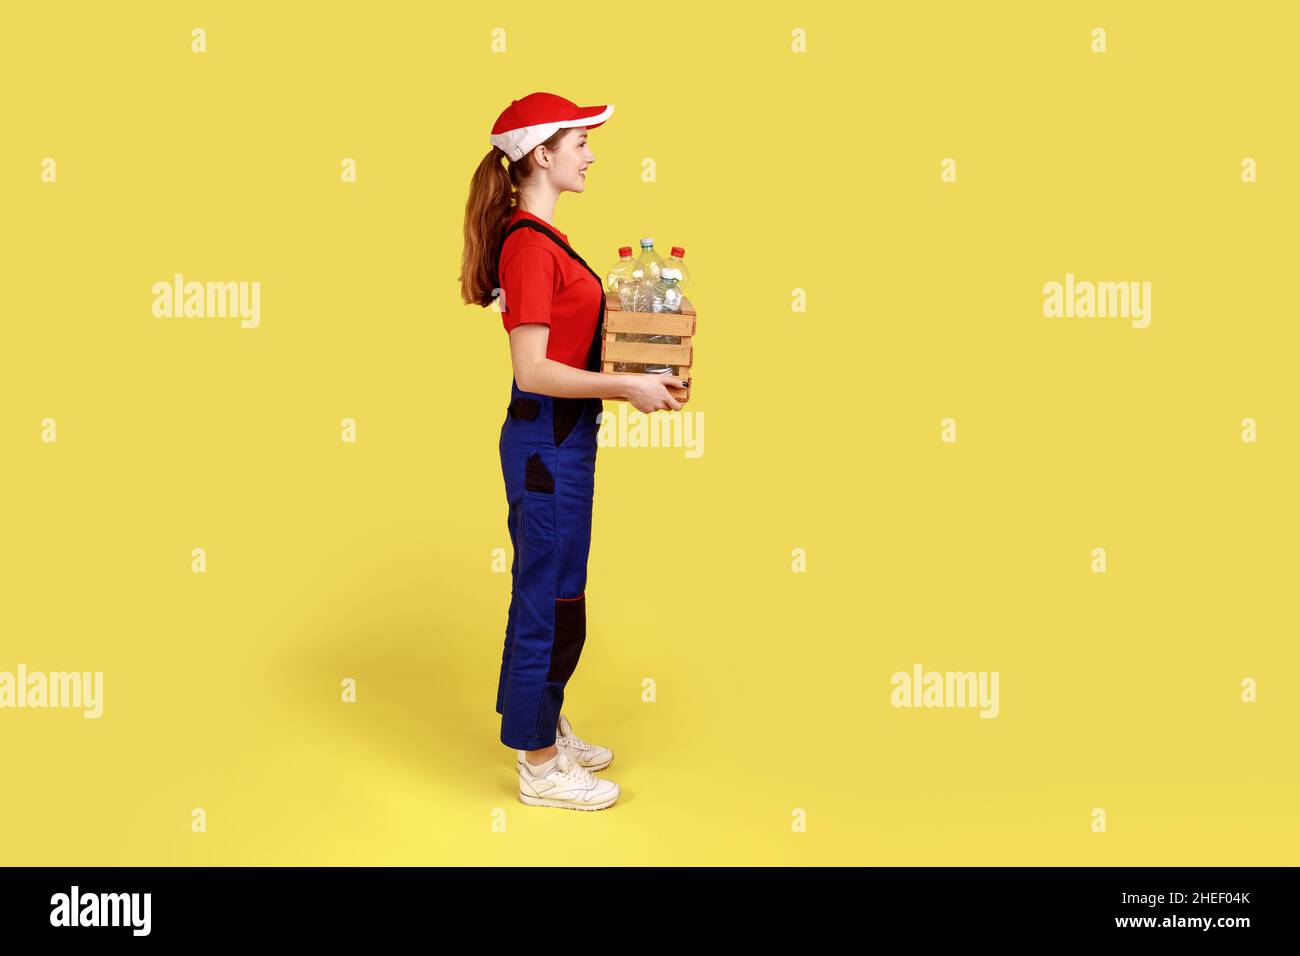 Vista lateral retrato de una voluntaria positiva satisfecha de pie con una caja llena de botellas de plástico vacías, con monos y gorra roja. Estudio en interior grabado aislado sobre fondo amarillo. Foto de stock